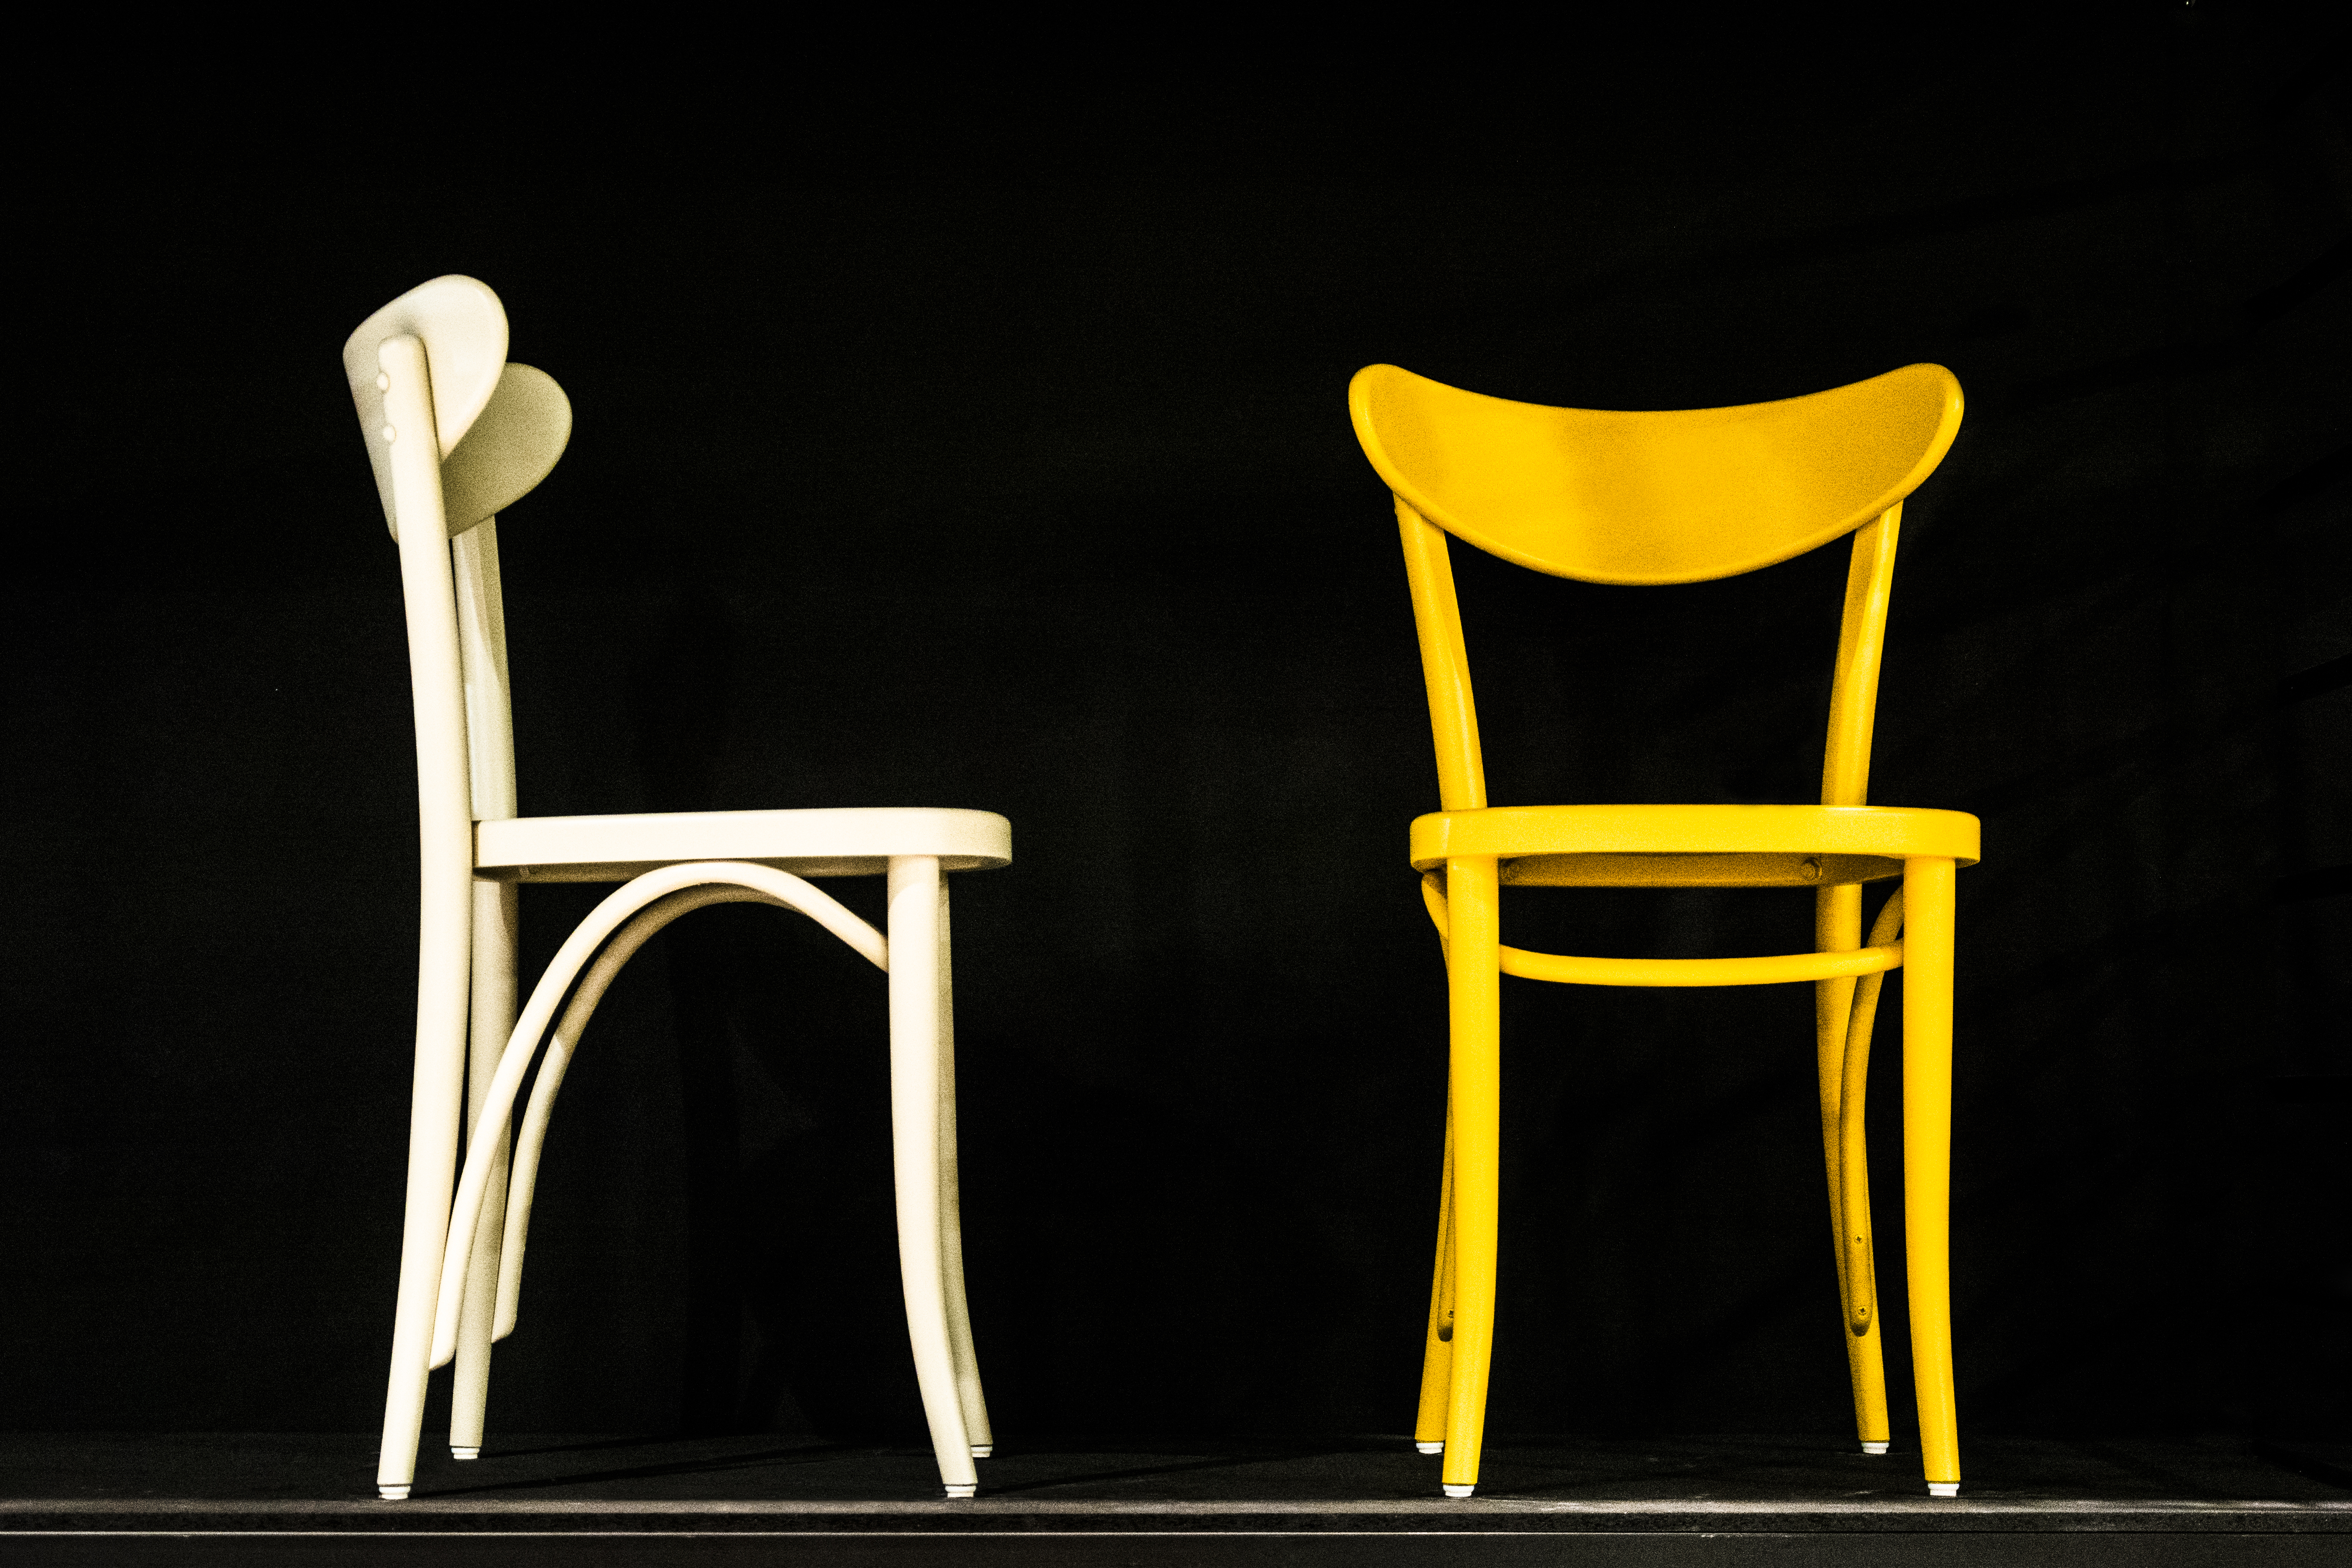 <p>Боядисайте старите столове в ярки и свежи цветове. Сами ще се изненадате колко&nbsp;ще се промени&nbsp;обстановката след това.</p>

<p>&nbsp;</p>